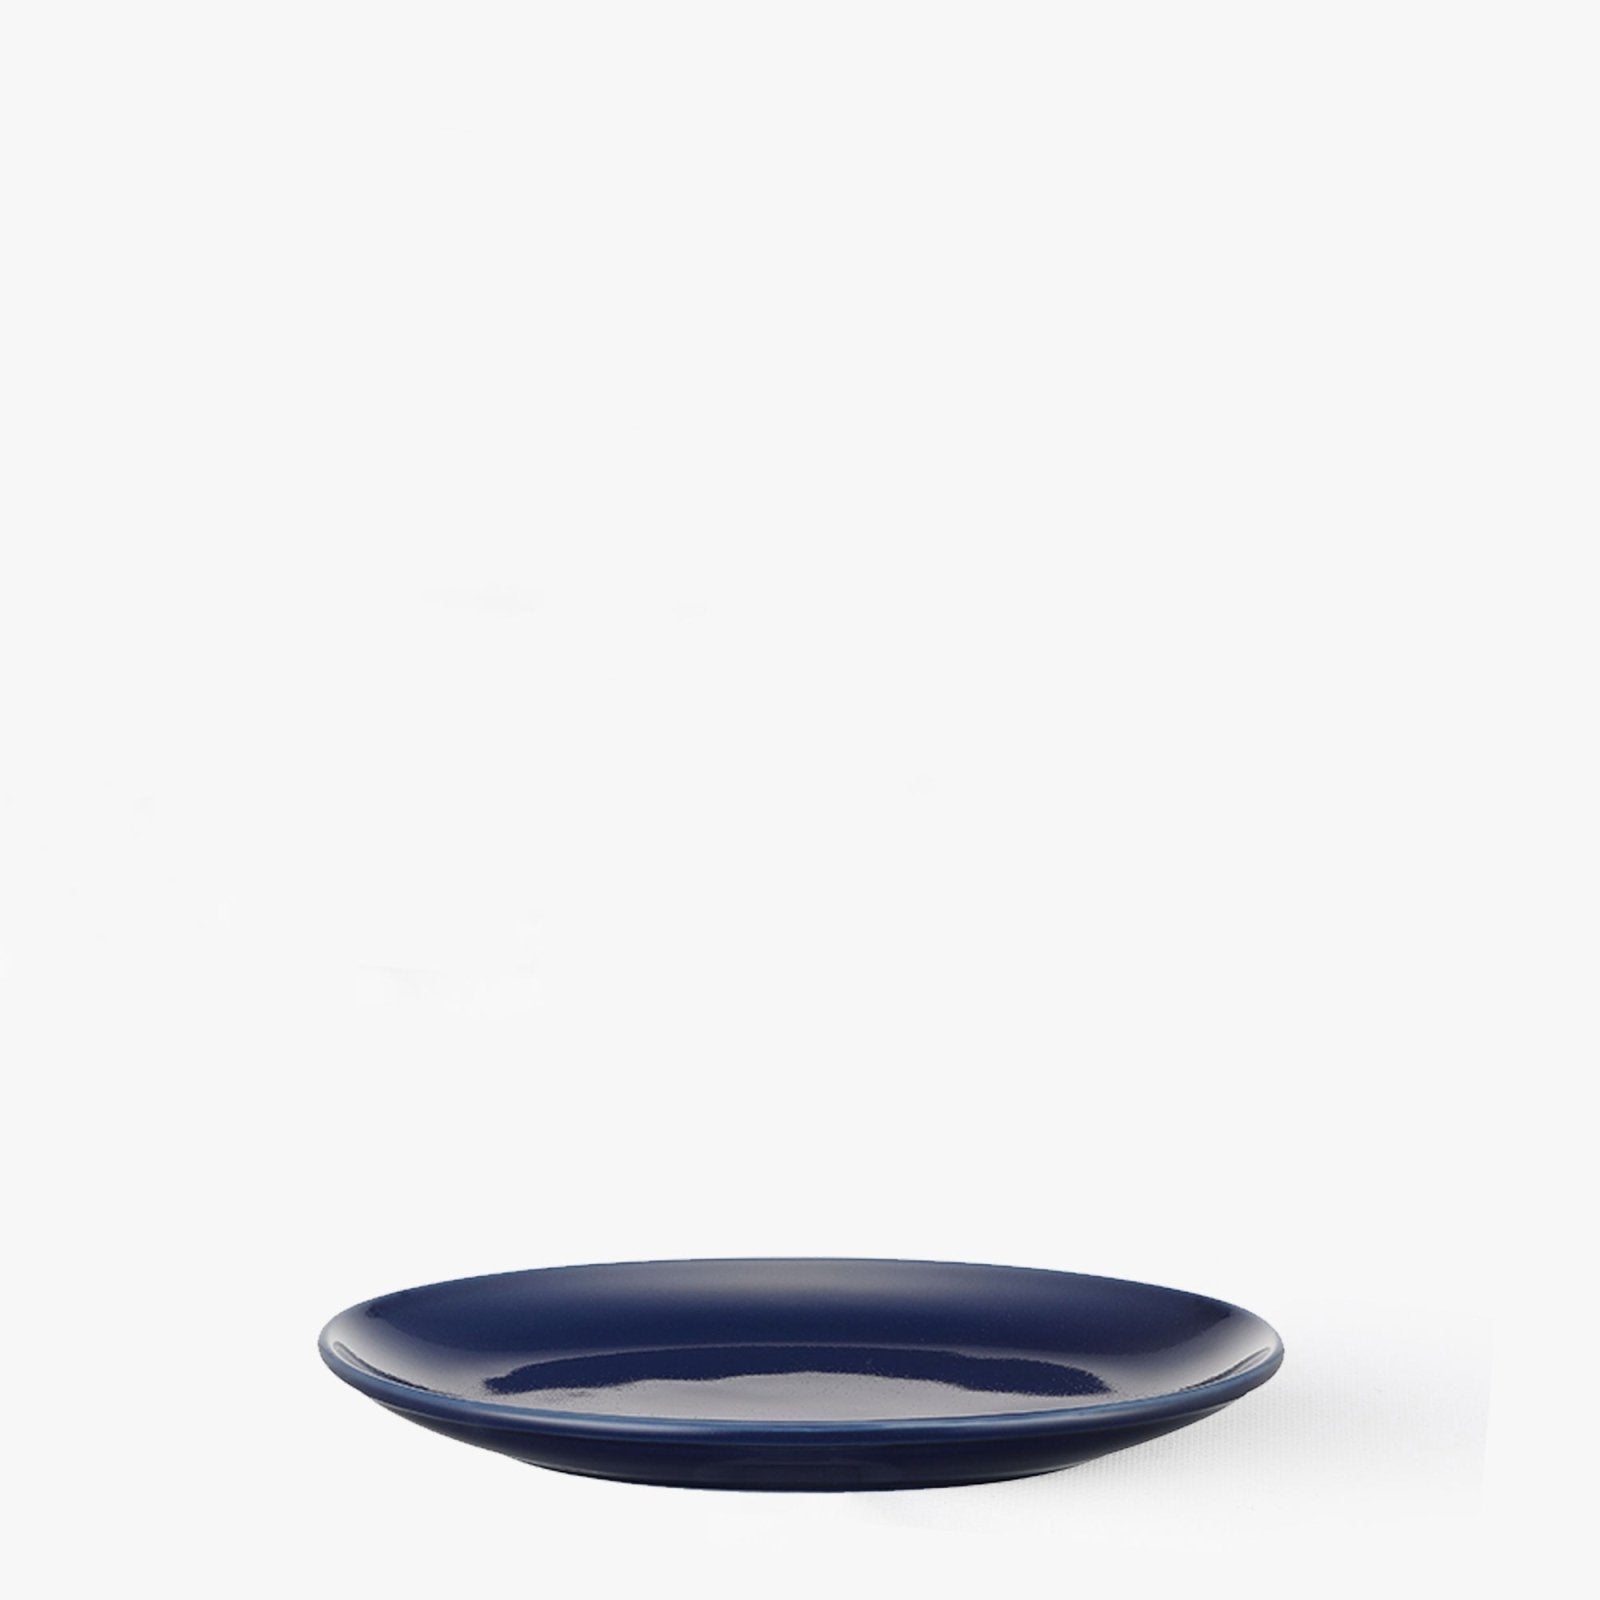 Assiette ovale Bleu marine Ø 190mm - Common -iRASSHAi